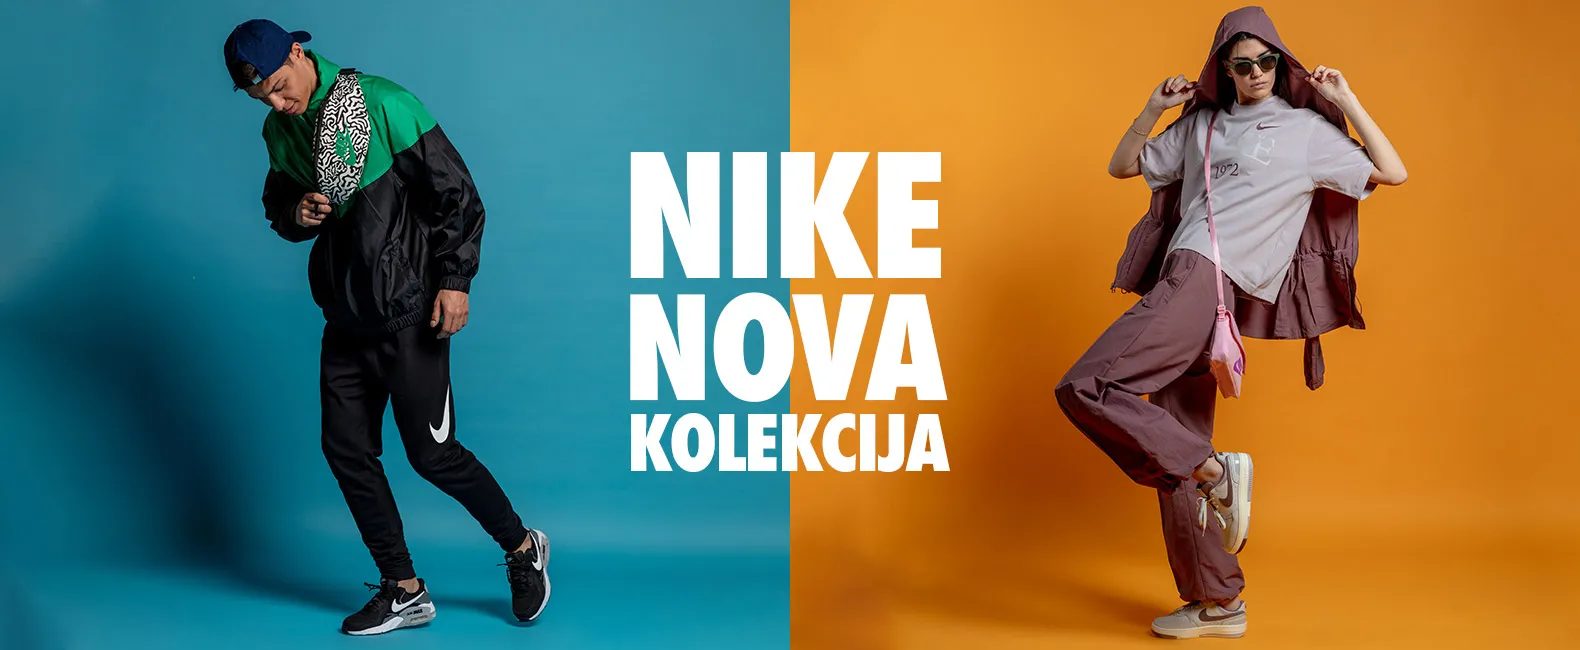 Nike nova kolekcija